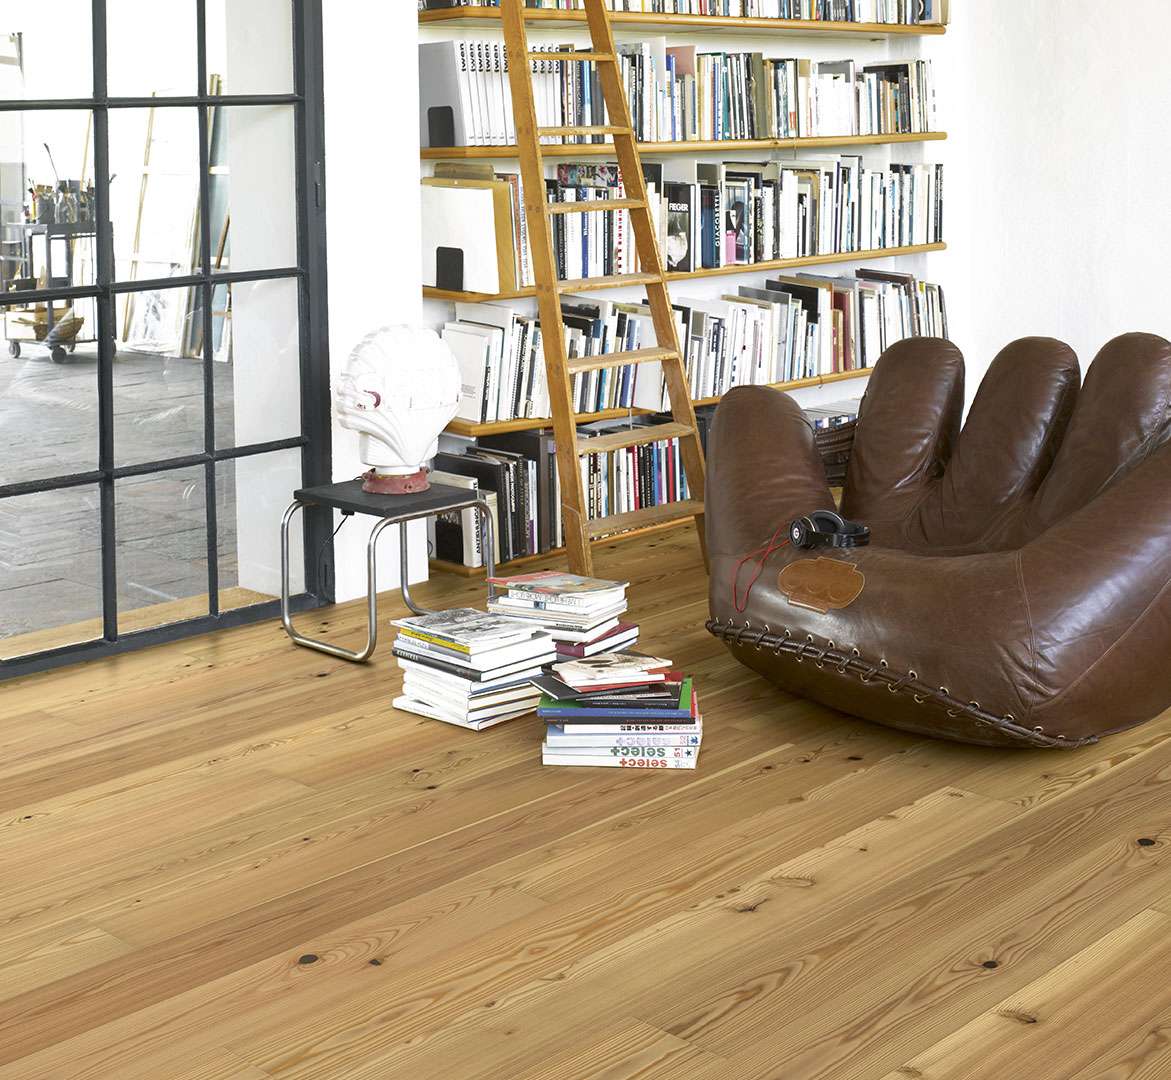 PARADOR Classic 3060 (Modřín - Rustikal - olej) 1739923 - dřevěná třívrstvá podlaha